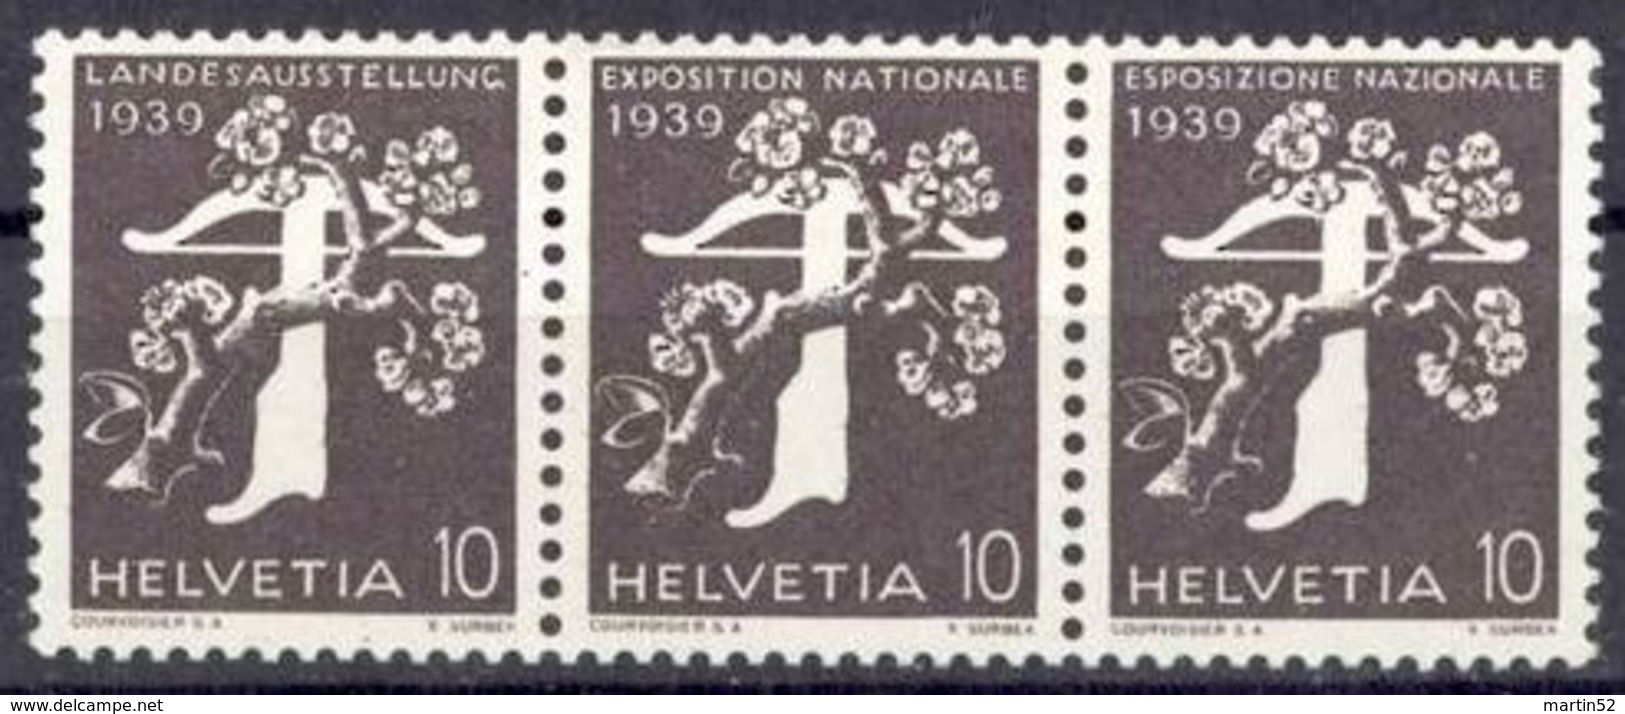 Schweiz Suisse 1939: Zusammendruck Se-tenant Zu Z26a Mi W14 ** MNH (Zu CHF 15.00) - Se-Tenant